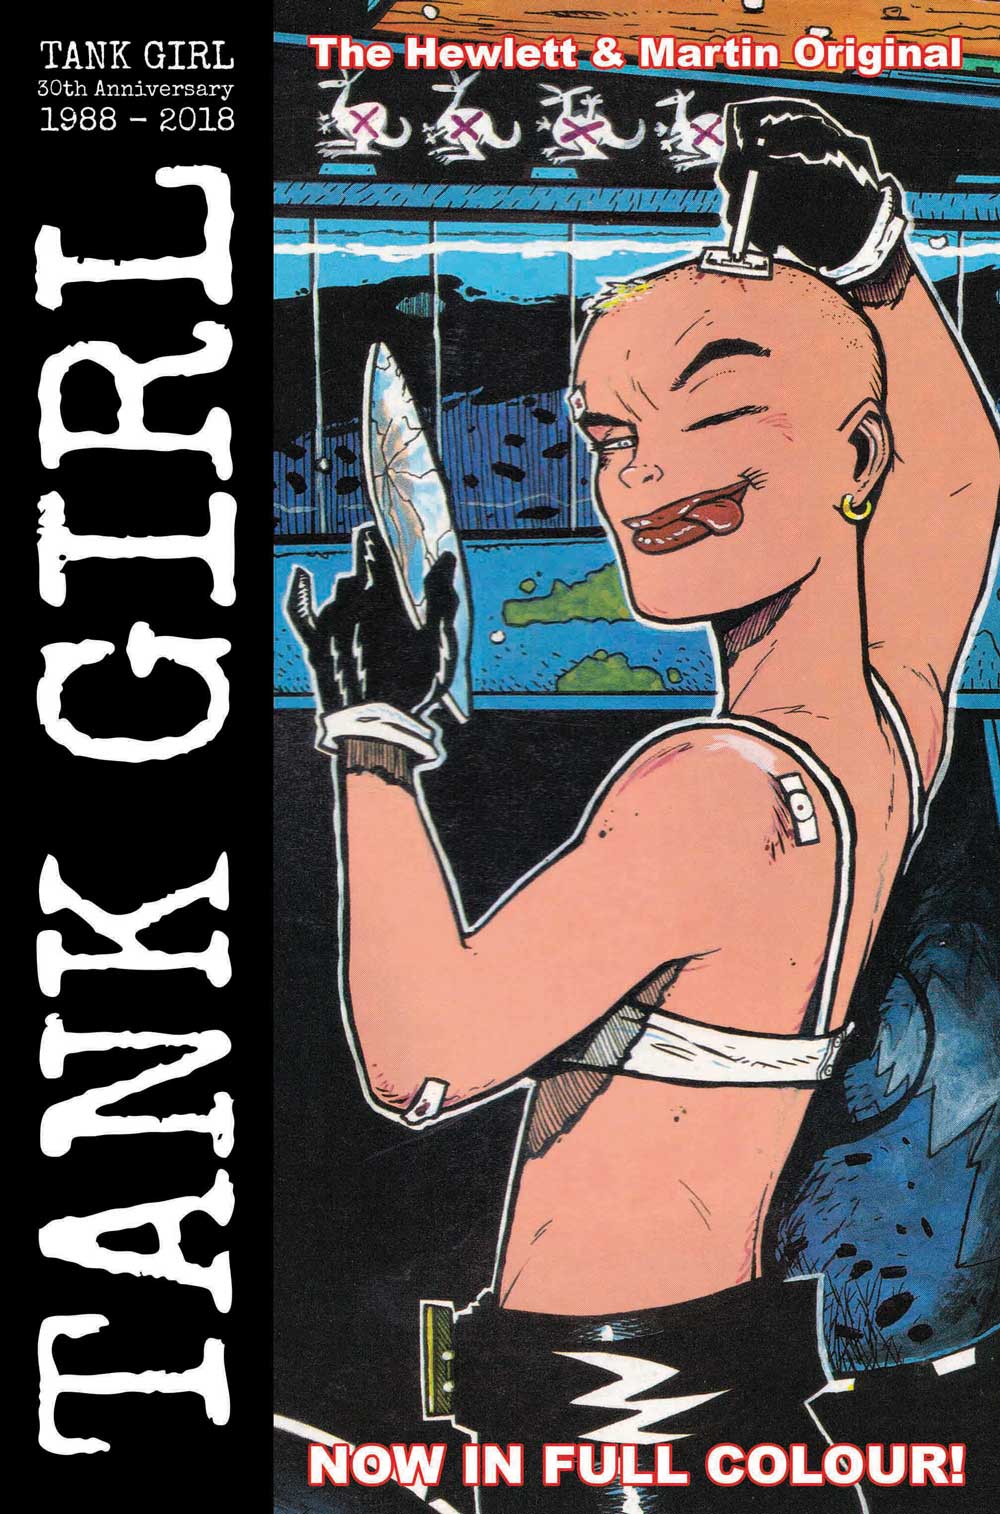 Titán publicará cómics originales de Tank Girl a todo color para el 30 aniversario